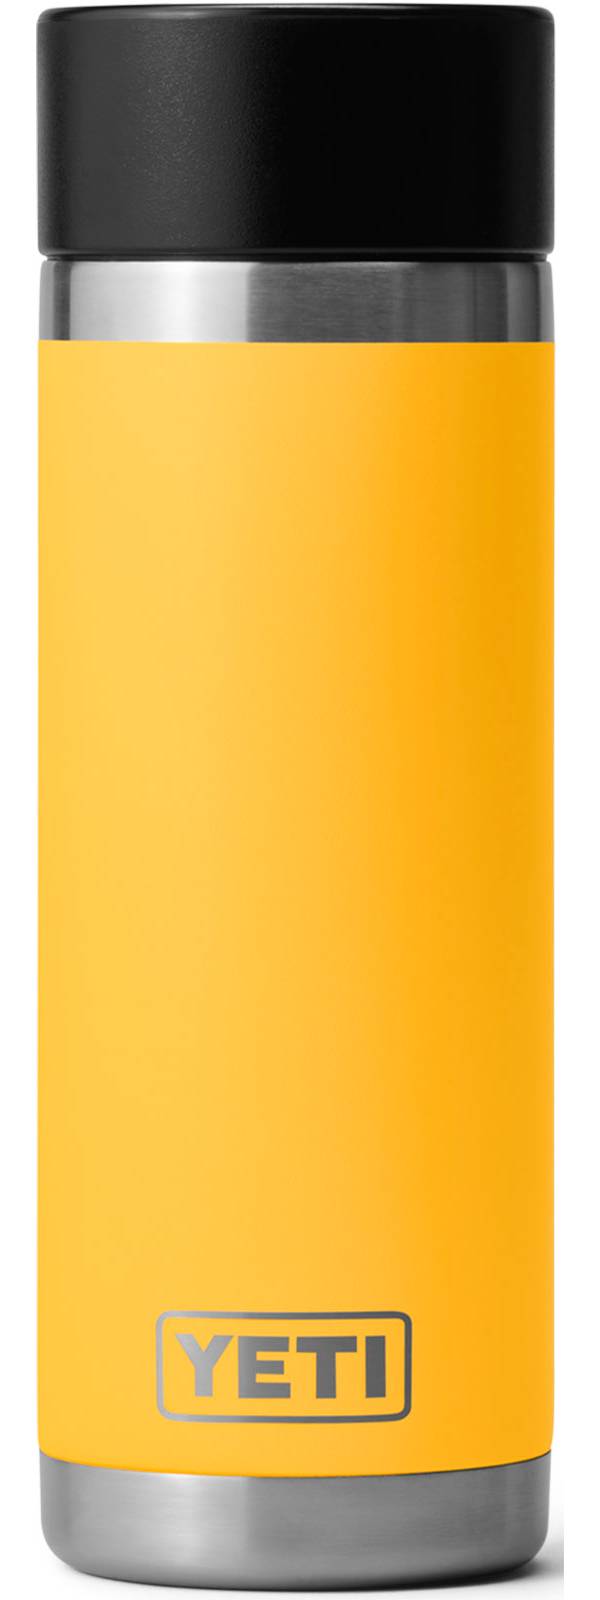 YETI 18 oz. Rambler Hotshot Bottle product image